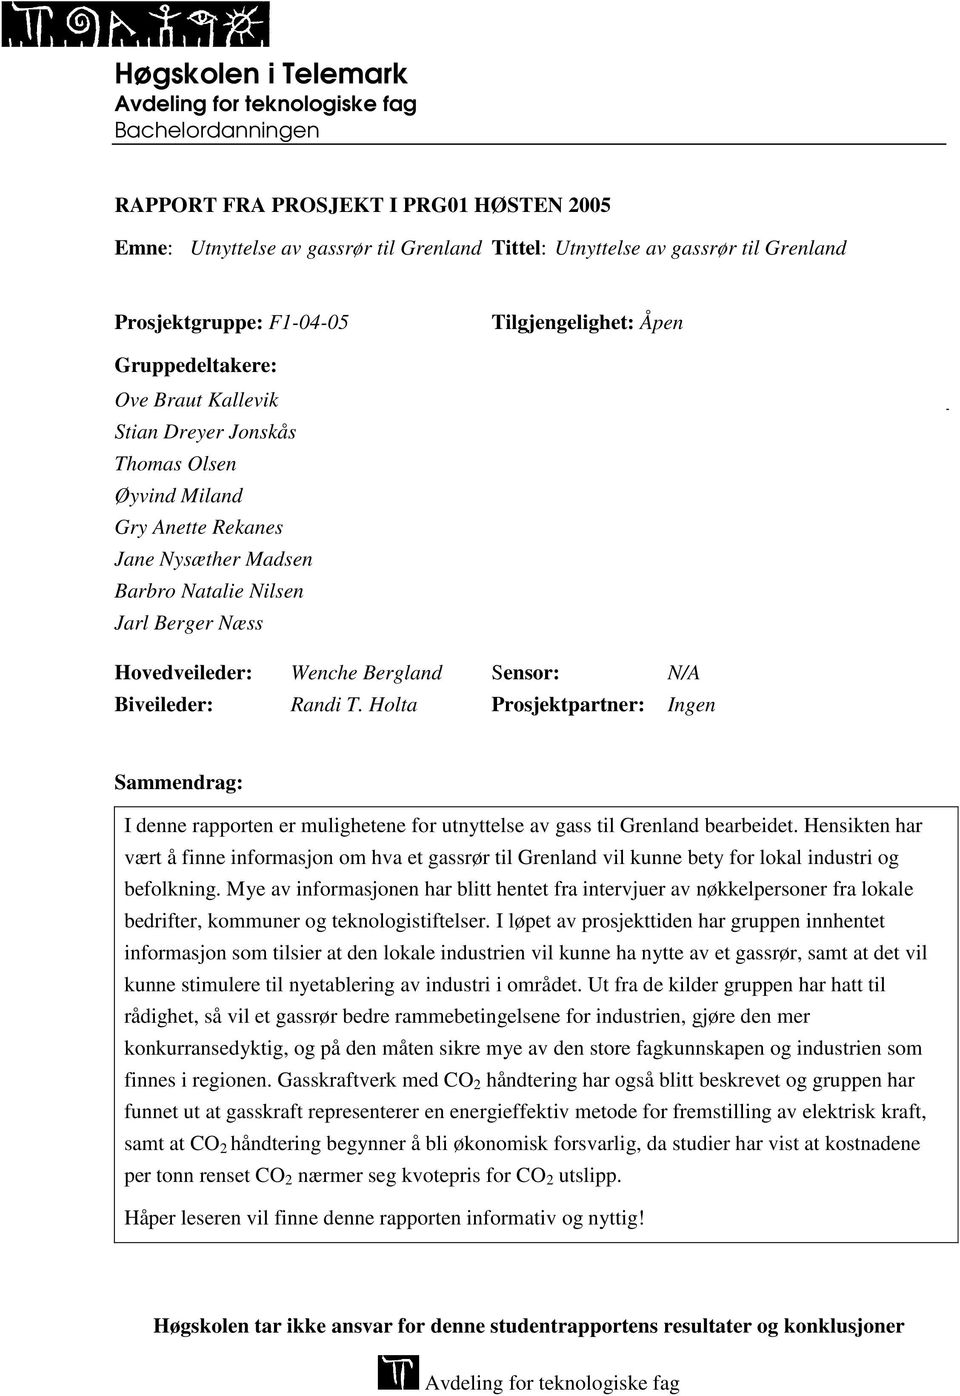 Wenche Bergland Sensor: N/A Biveileder: Randi T. Holta Prosjektpartner: Ingen Sammendrag: I denne rapporten er mulighetene for utnyttelse av gass til Grenland bearbeidet.